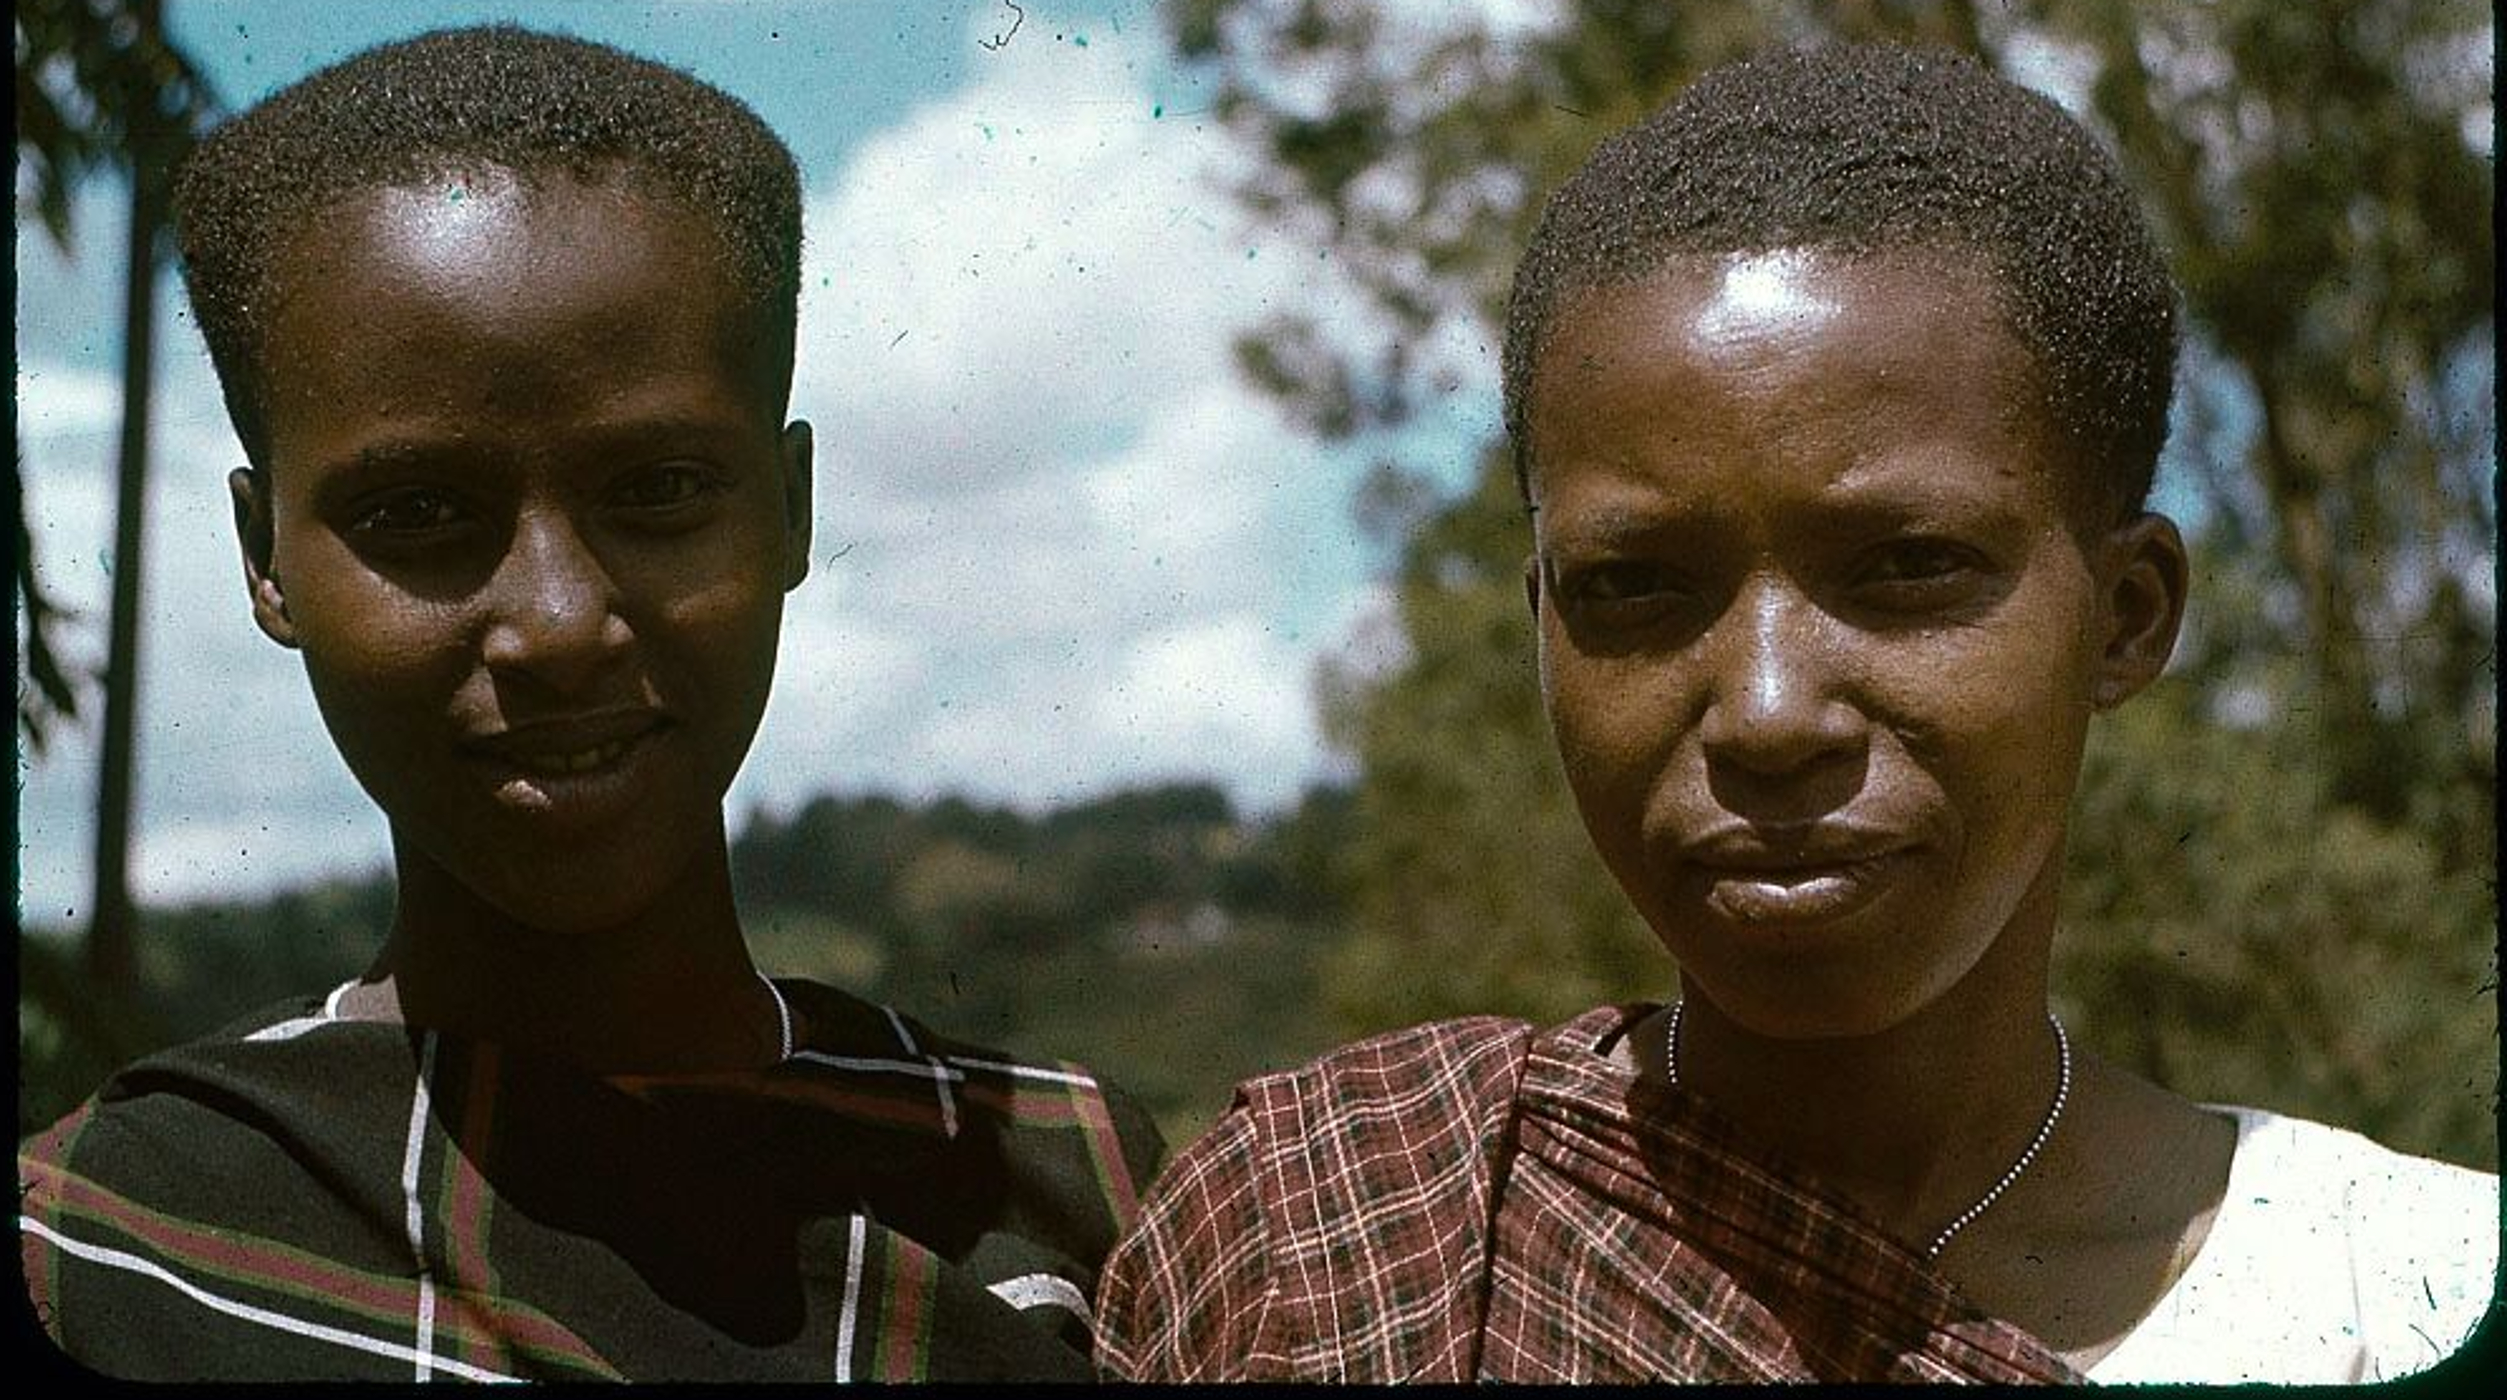 Tutsi Bantu women au naturel.